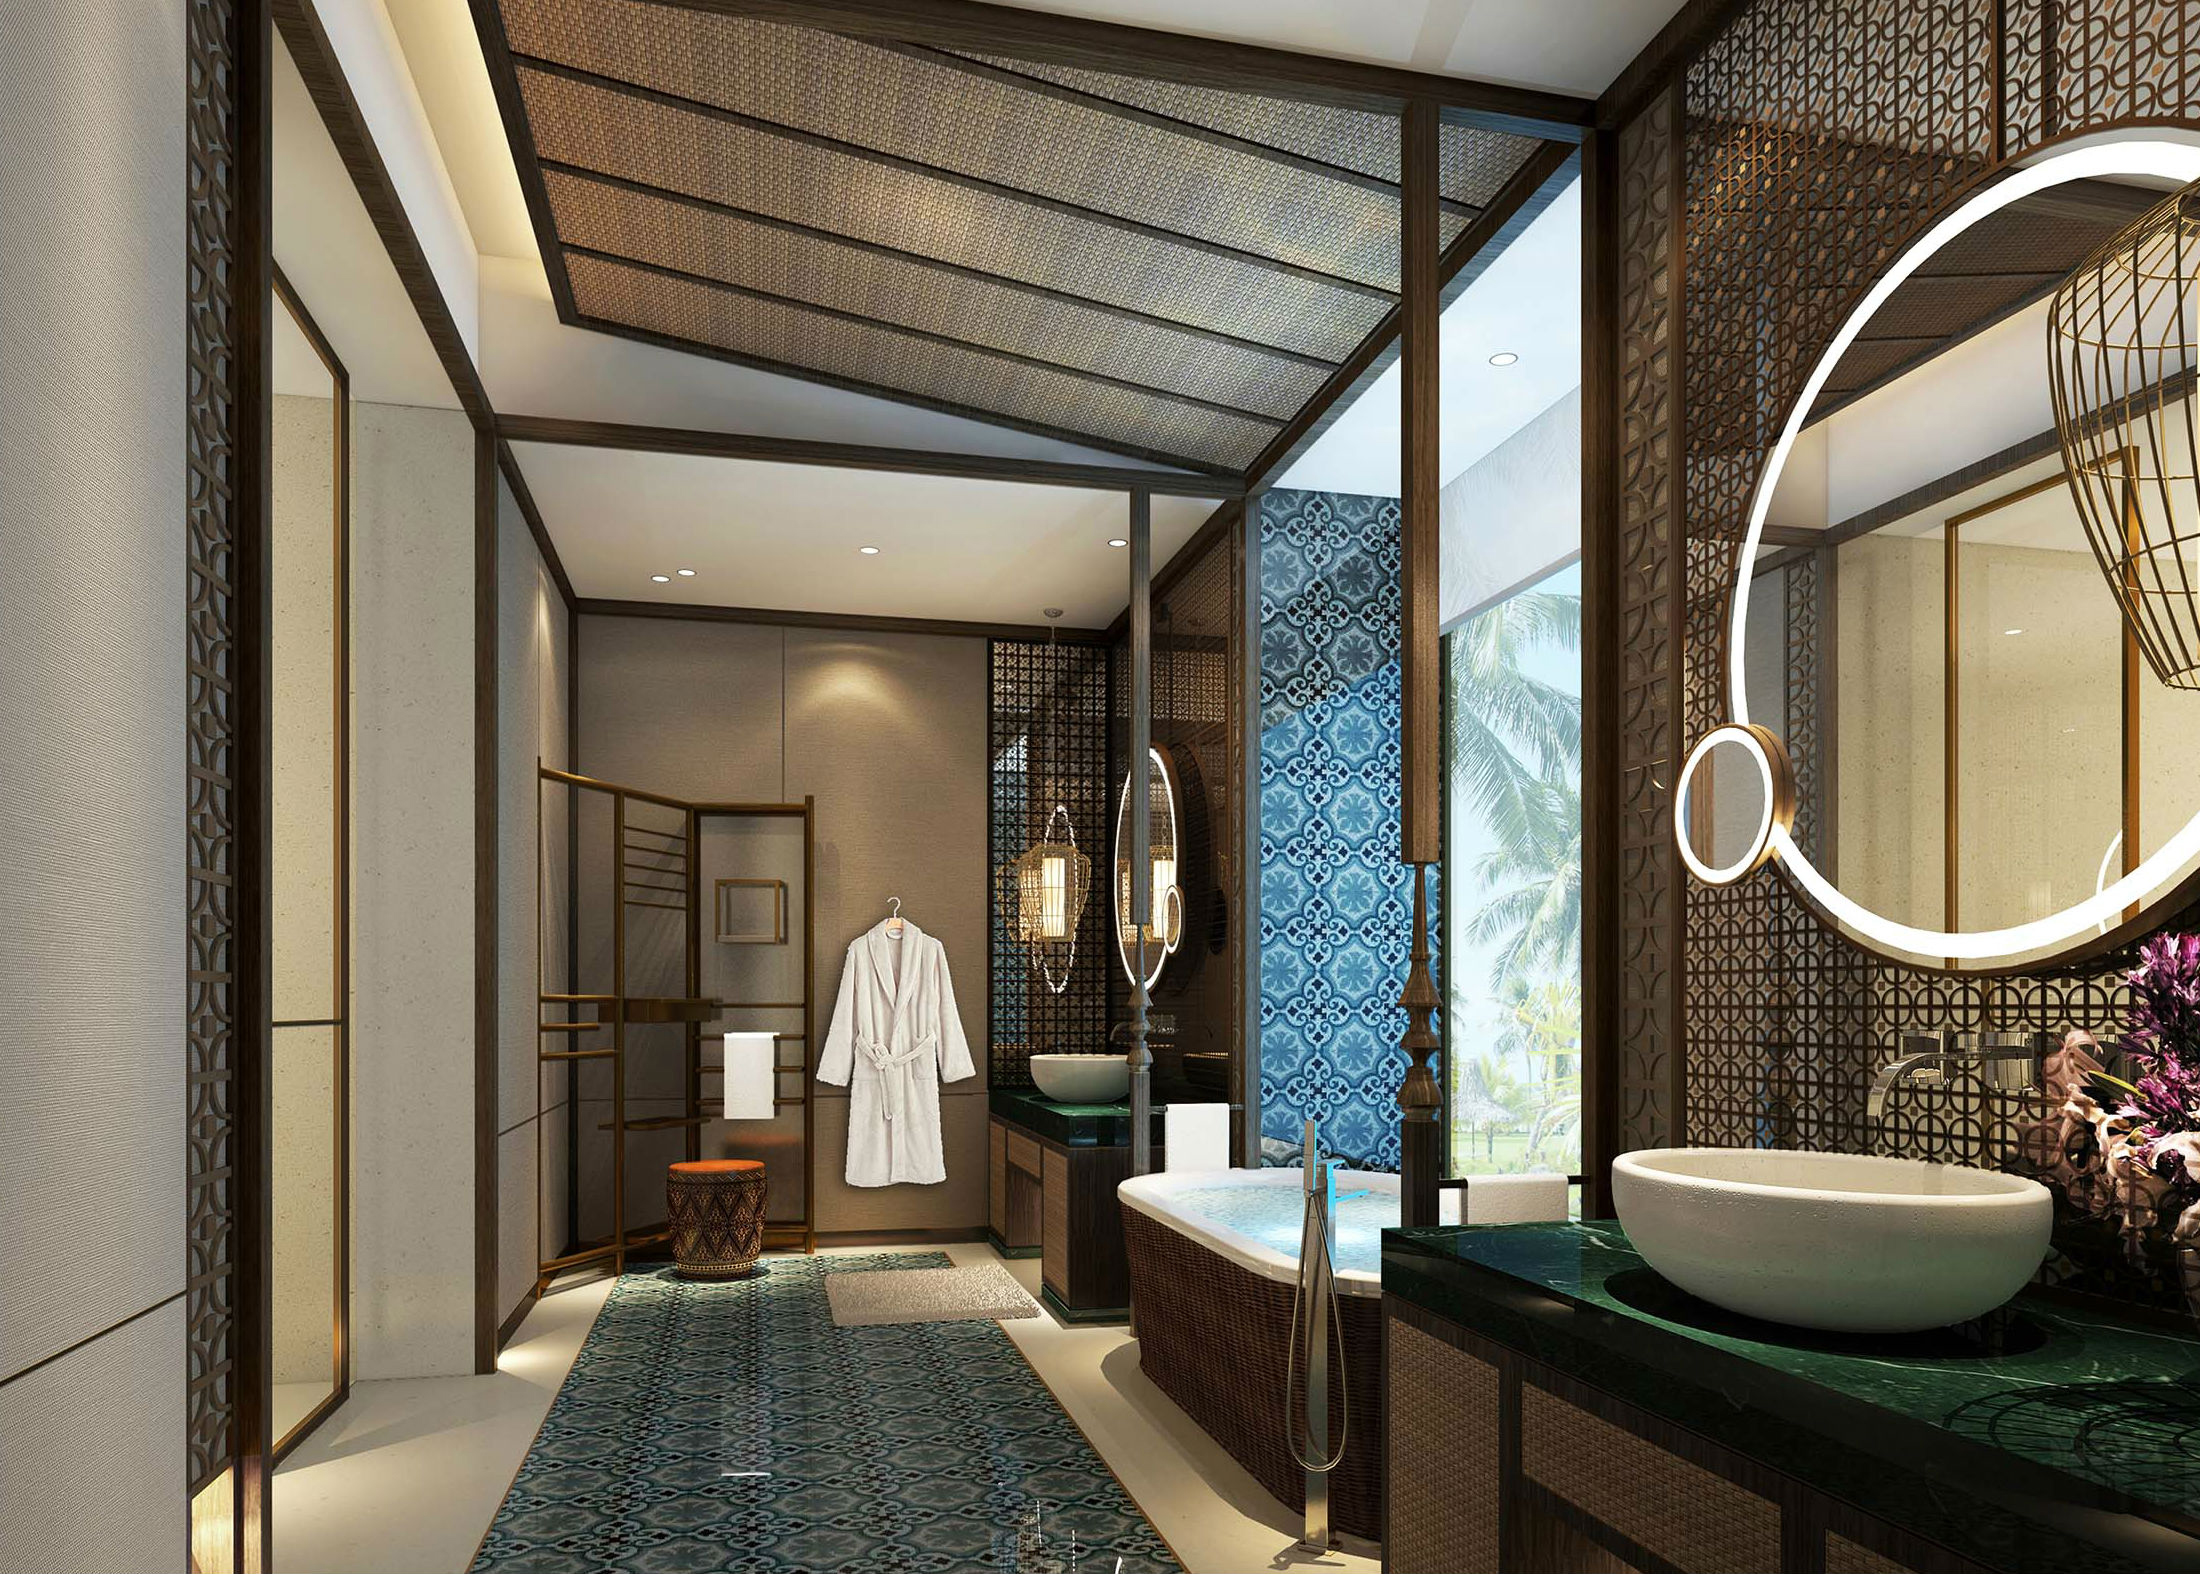 仰光Sedona酒店将于2015年年末展开新翼: Travel Weekly China